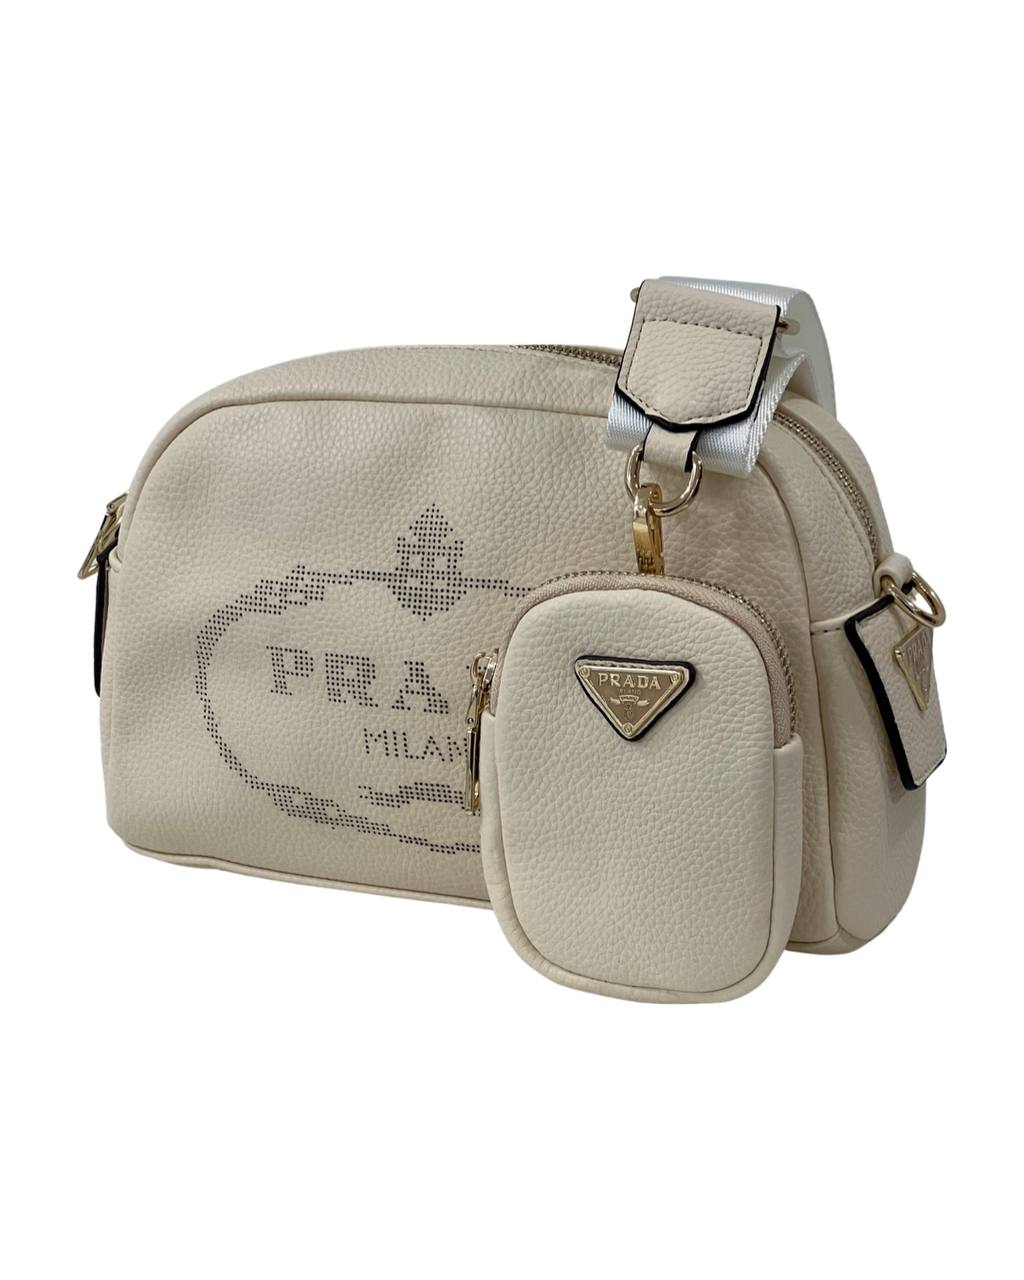 Prada Logo Camera Bag Leather Offwhite - Puzzles Egypt